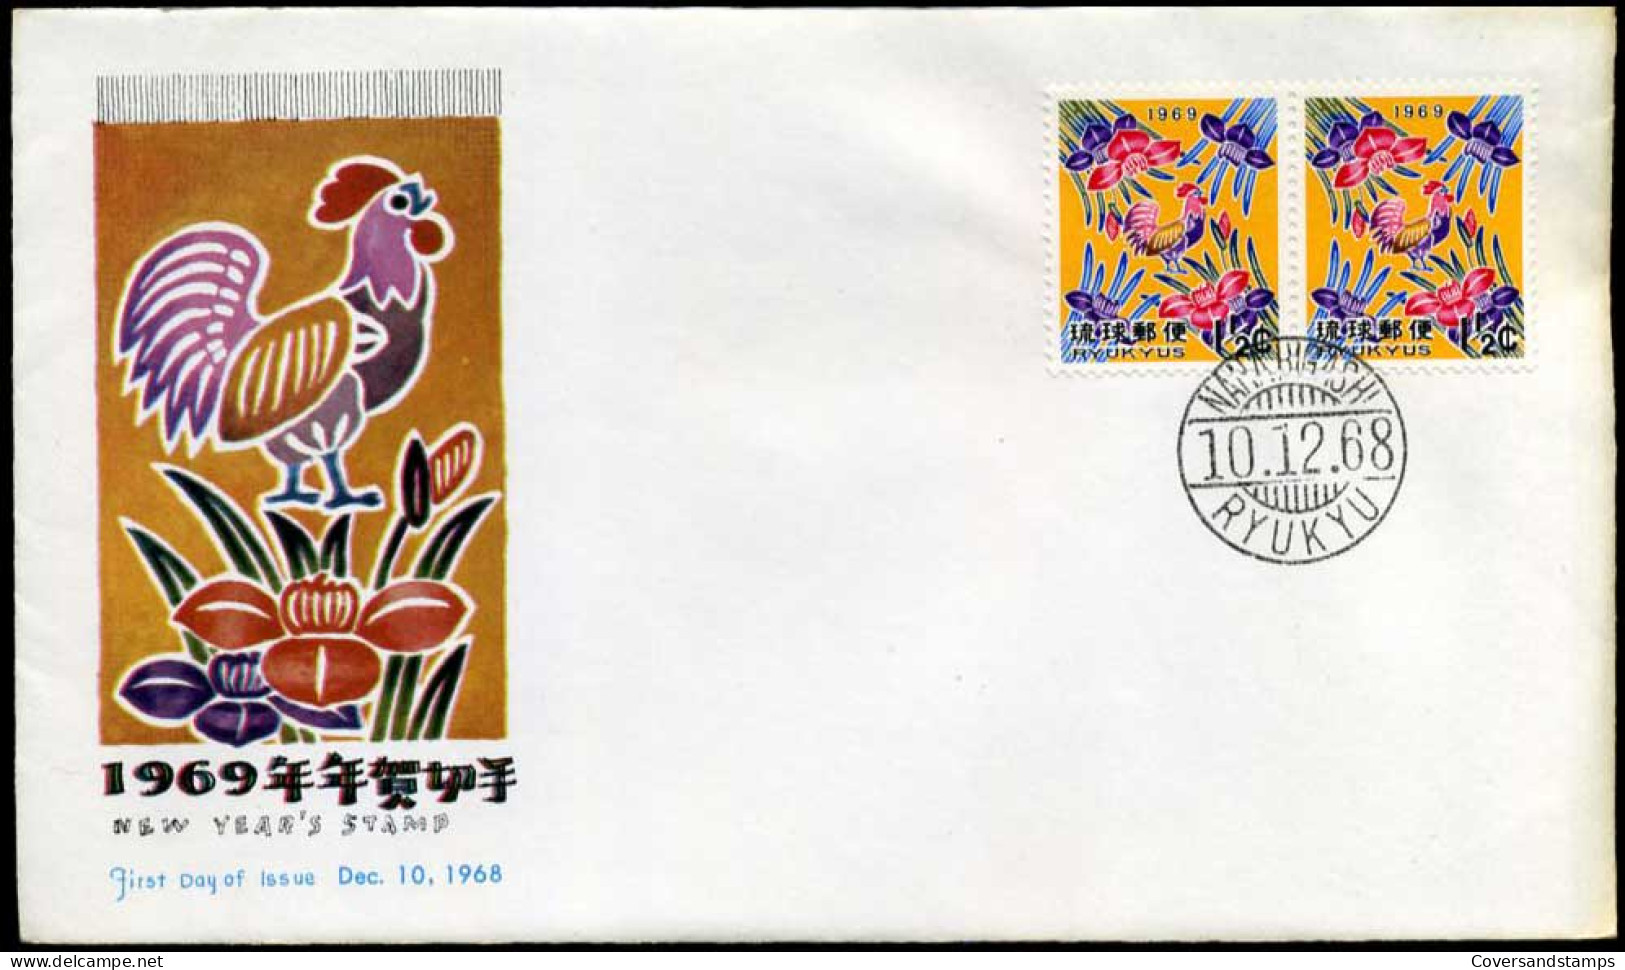 Ryukyu - FDC - New Year's Stamp 1969 - Ryukyu Islands